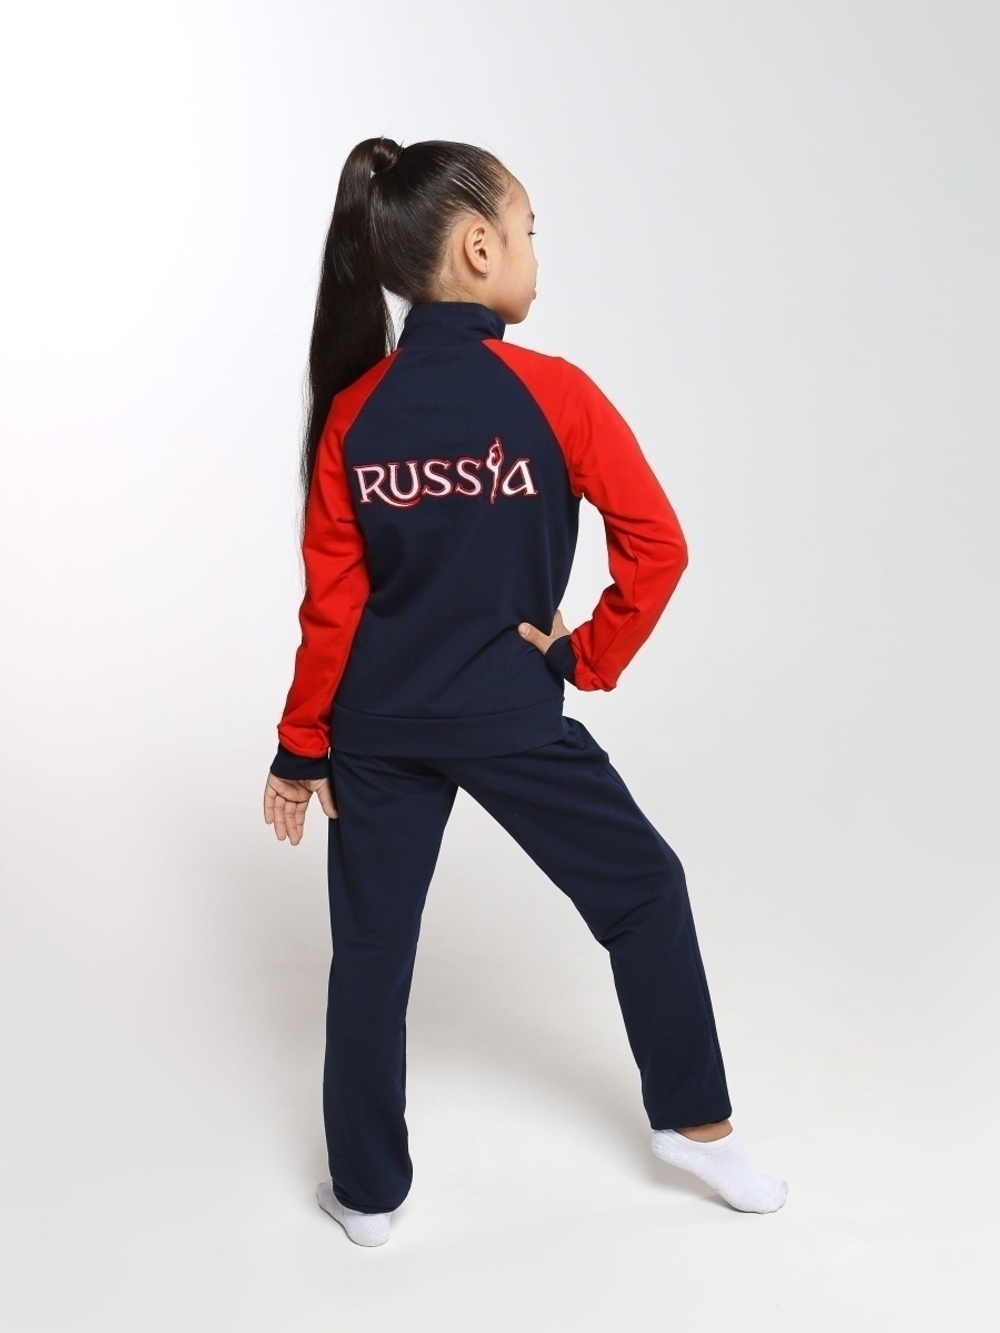 Спортивный костюм для девочки Россия красный рукав